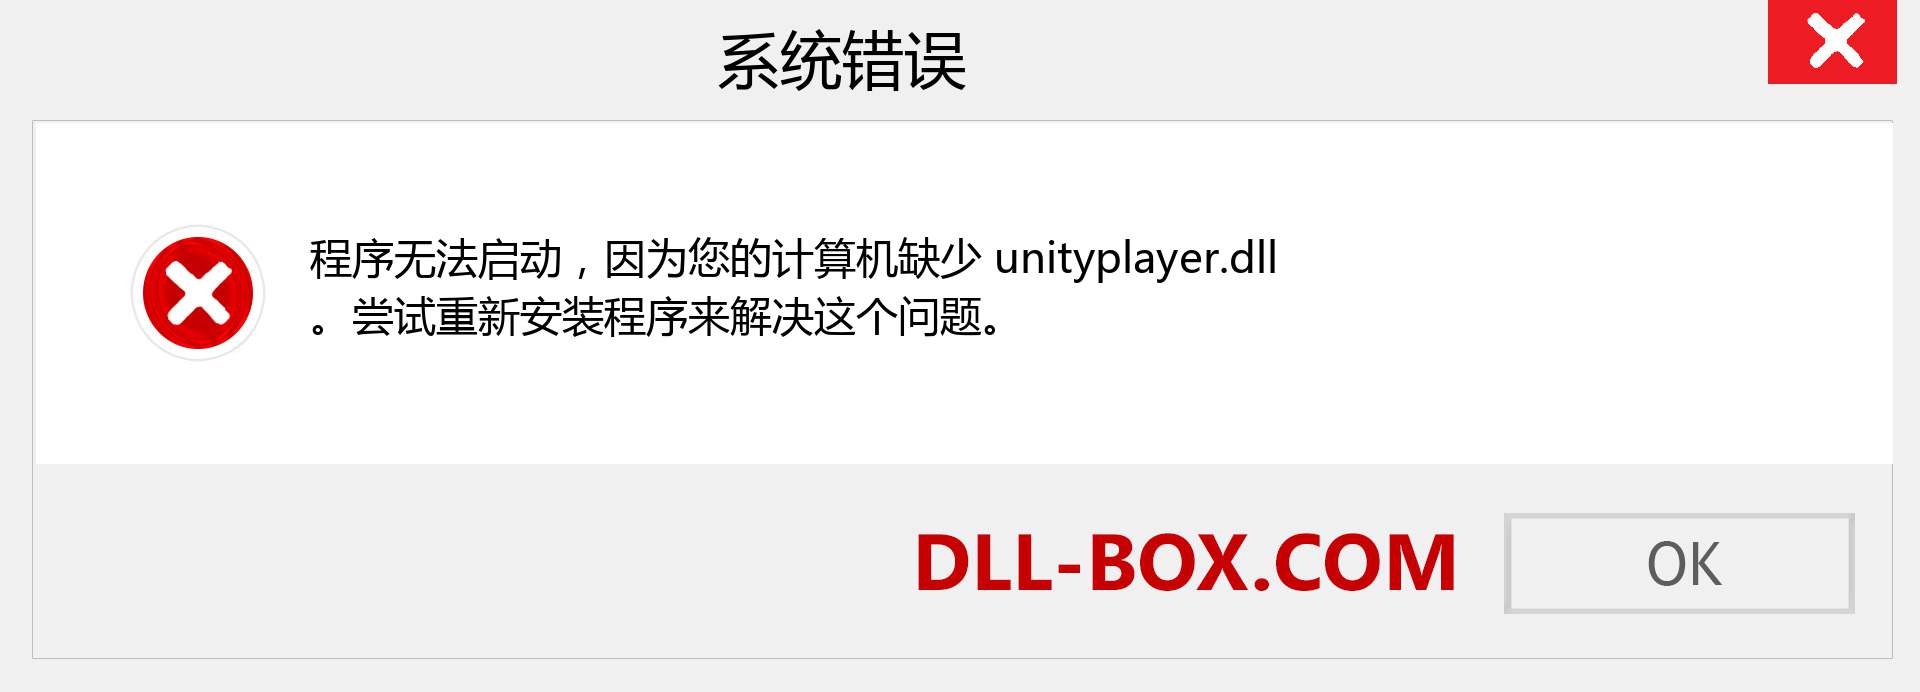 unityplayer.dll 文件丢失？。 适用于 Windows 7、8、10 的下载 - 修复 Windows、照片、图像上的 unityplayer dll 丢失错误